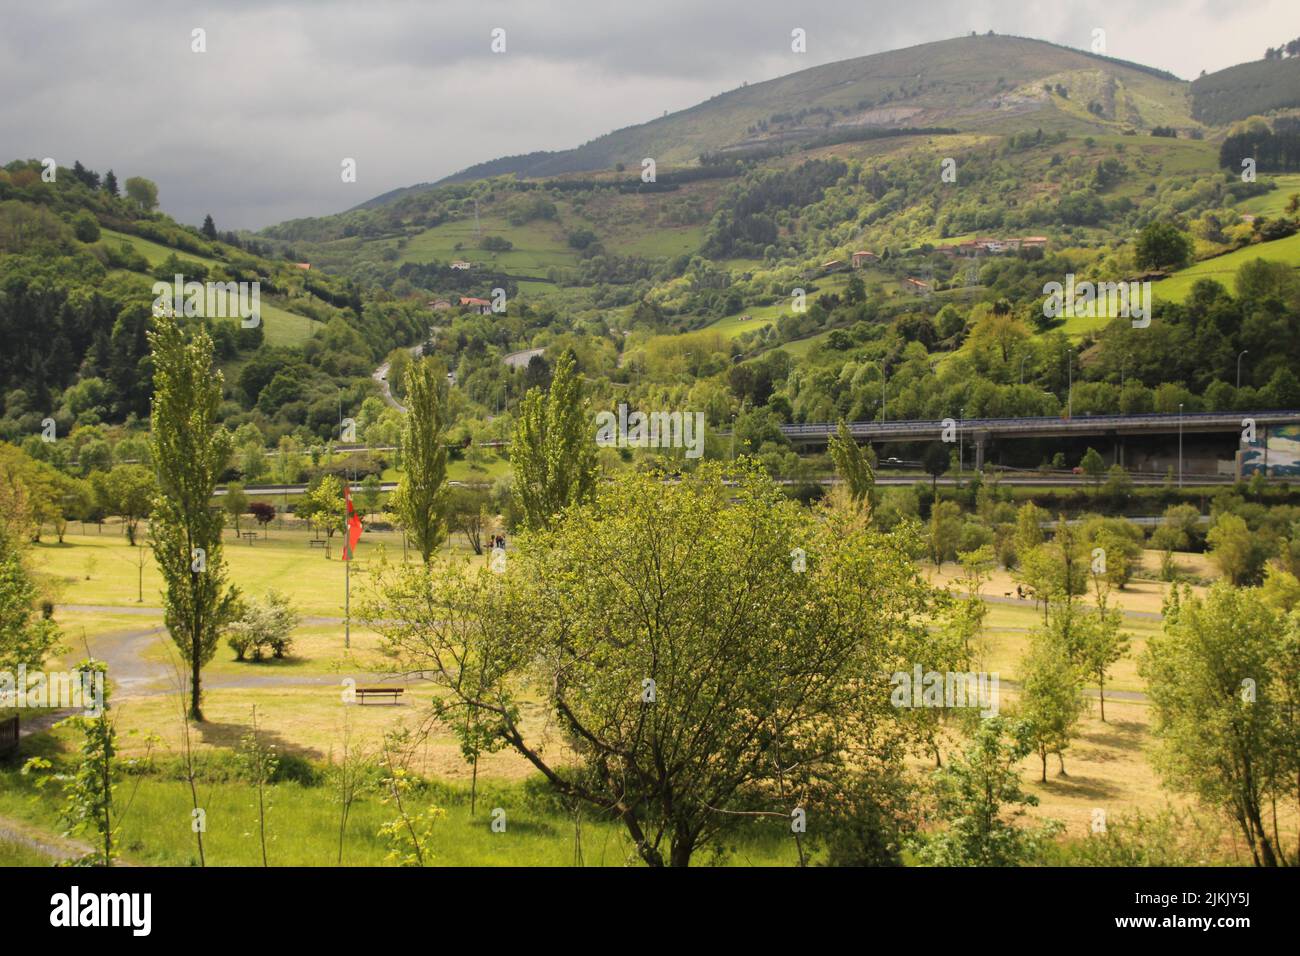 Eine malerische Aussicht auf einen Park und Autobahnen gegen grüne Berge an einem bewölkten Tag Stockfoto